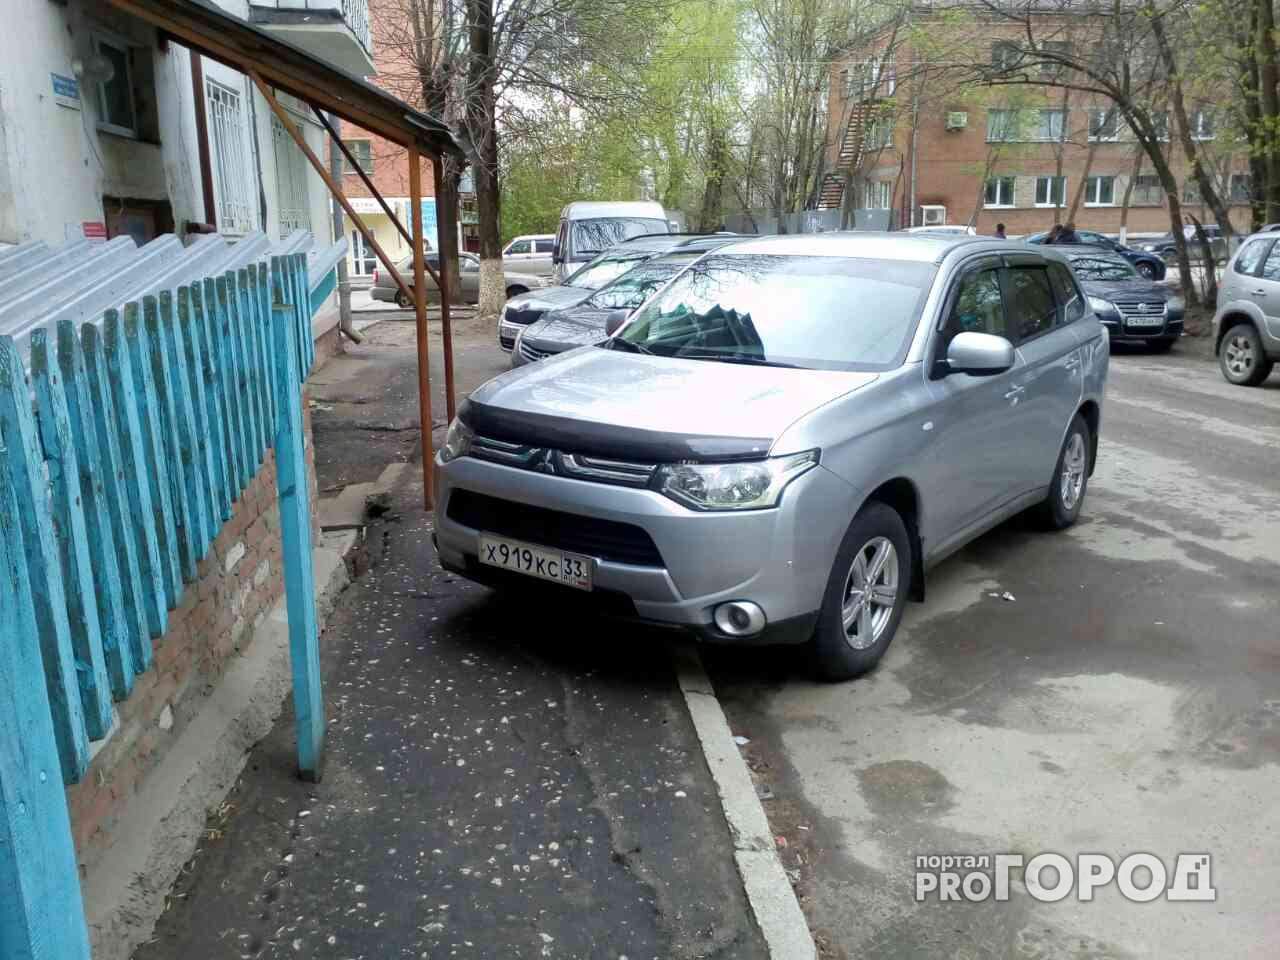 Паркуюсь как хочу: очередная подборка автохамов с улиц Владимира